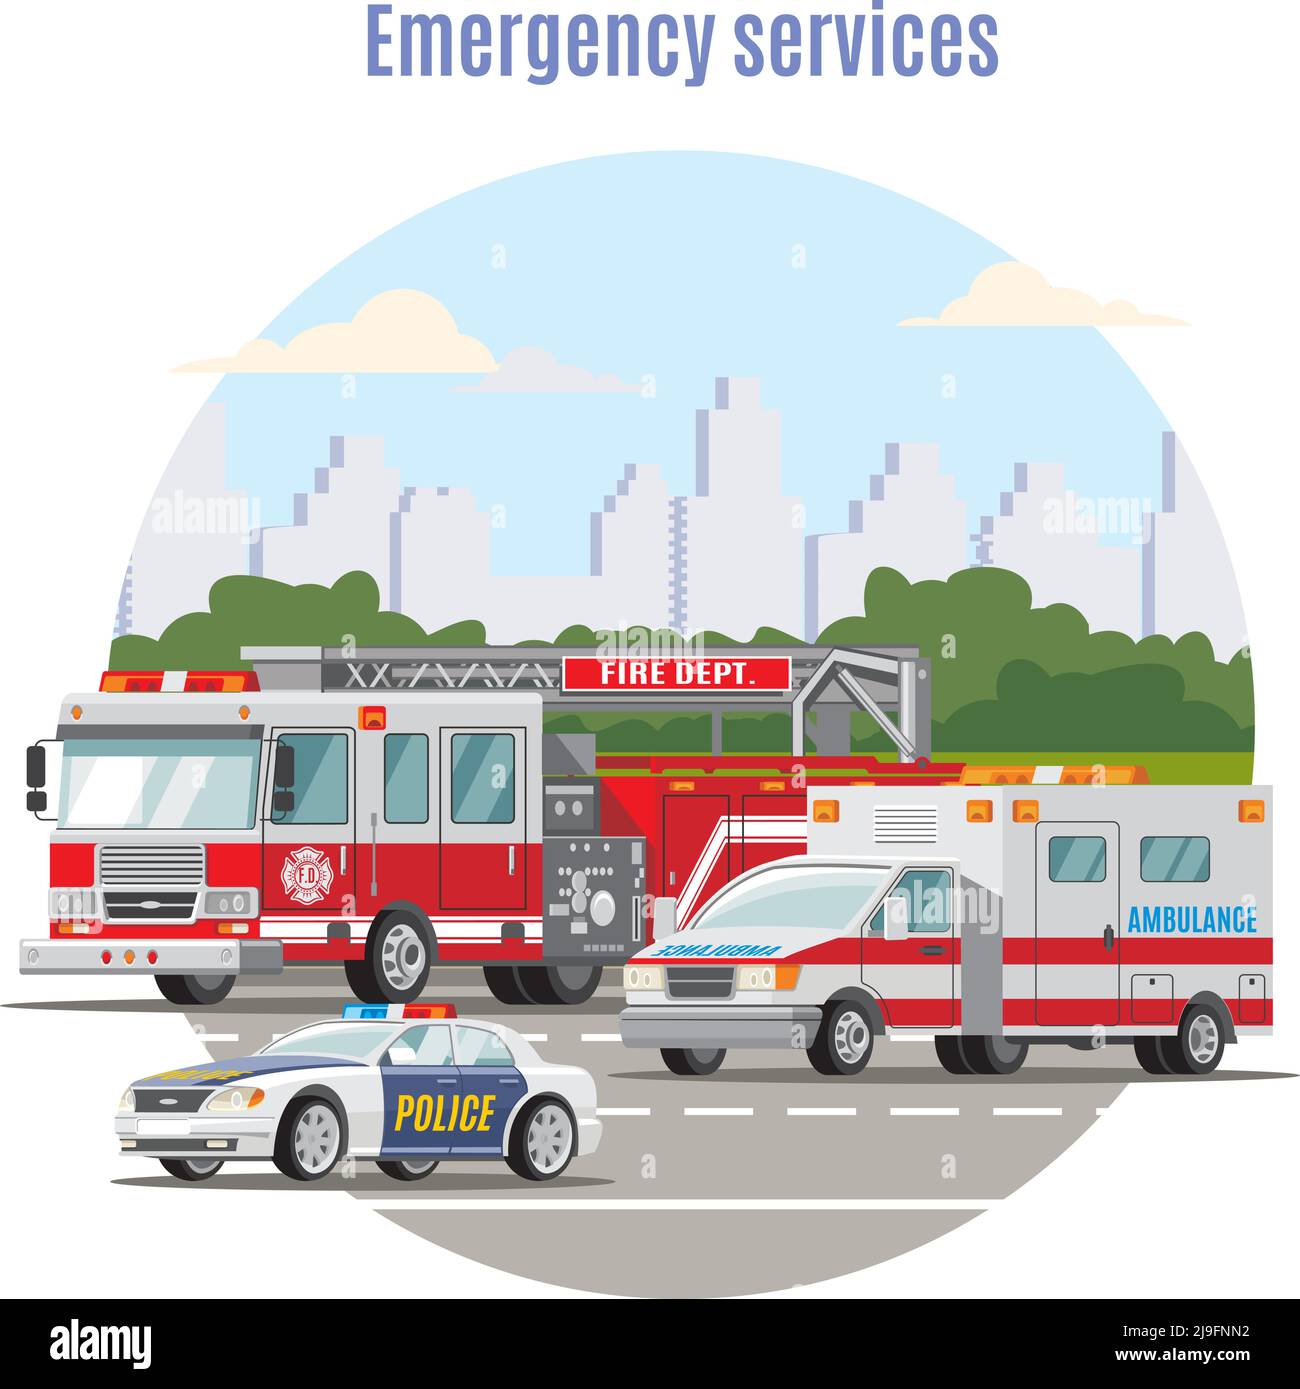 Buntes Notfall-Stadtverkehrskonzept mit Feuerwehrauto-Ambulanz und Polizei Autos auf Straße Vektor-Illustration Stock Vektor